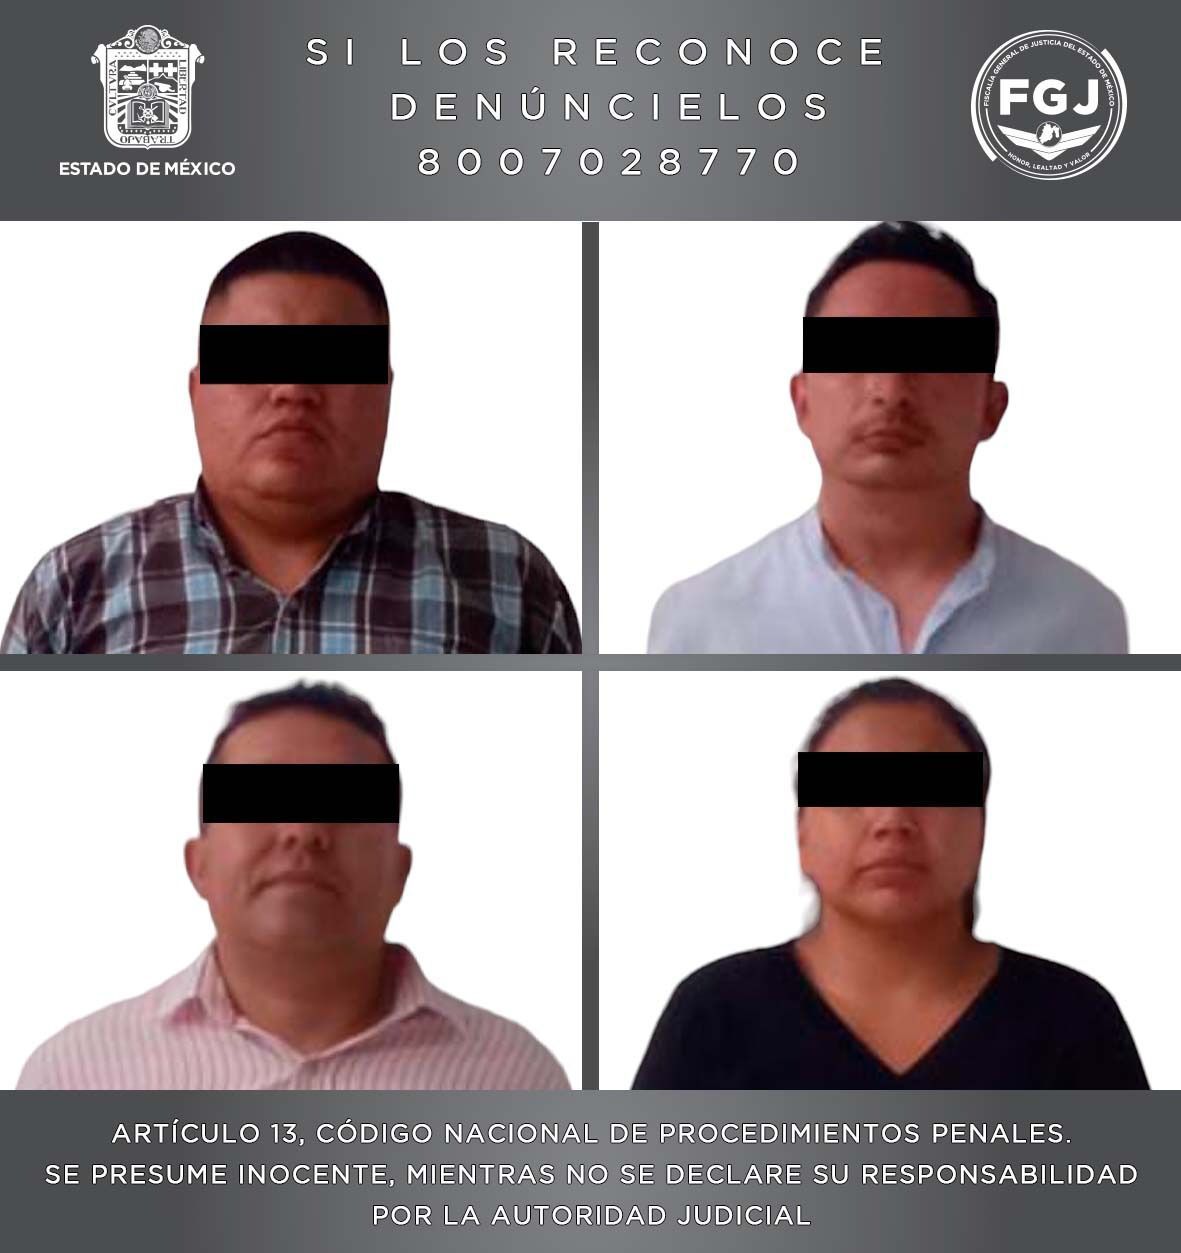 POR SECUESTRO EXPRÉS, CUATRO POLICÍAS DE NAUCALPAN FUERON VINCULADOS A PROCESO